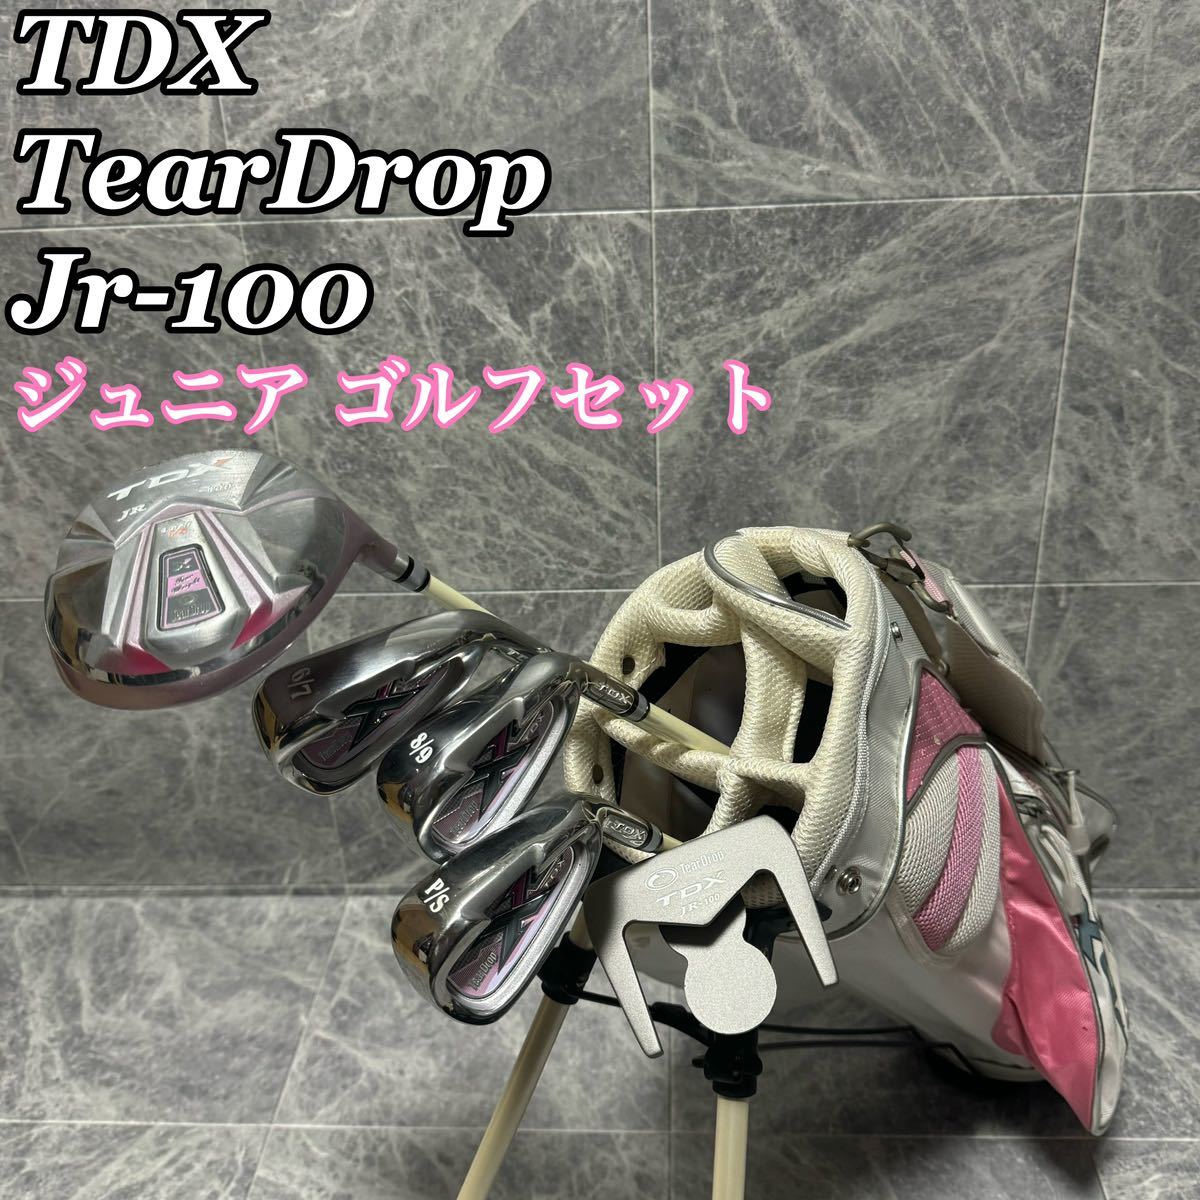 TDX Jr-100 TearDrop ティアドロップ ゴルフクラブセット ジュニア キッズ 右 女の子